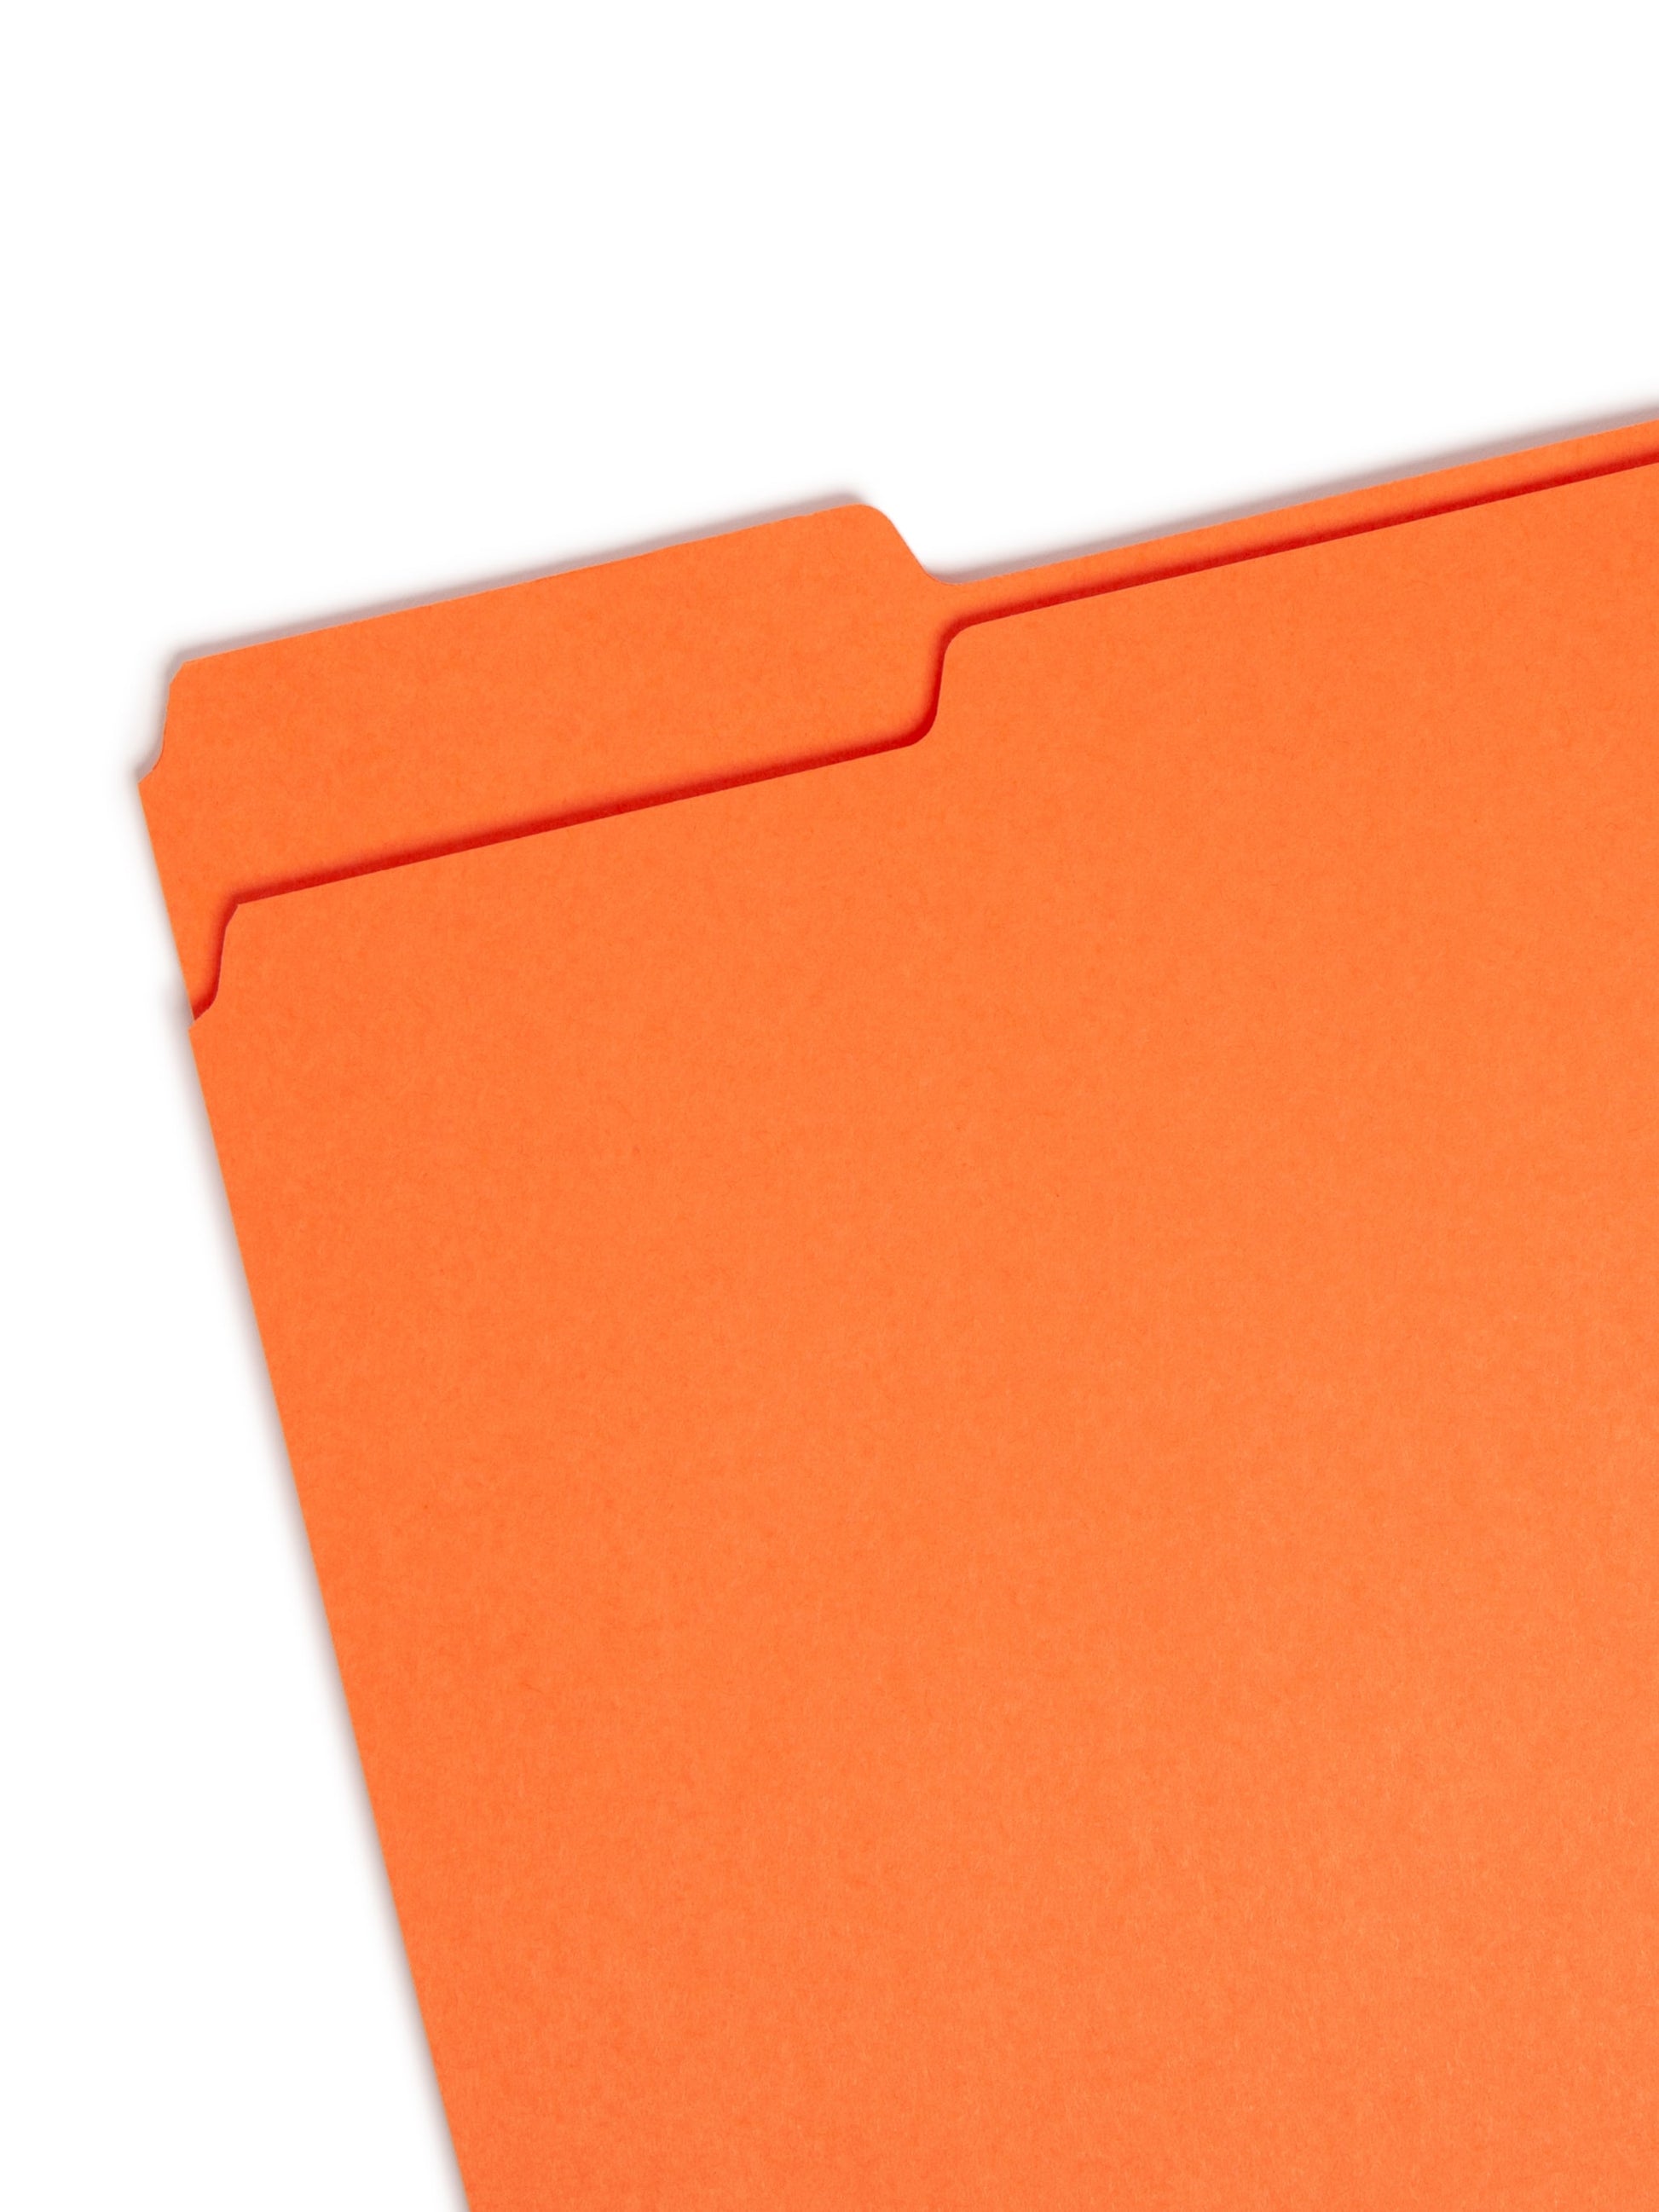 Standard File Folders, 1/3-Cut Tab, Orange Color, Letter Size, Set of 100, 086486125437